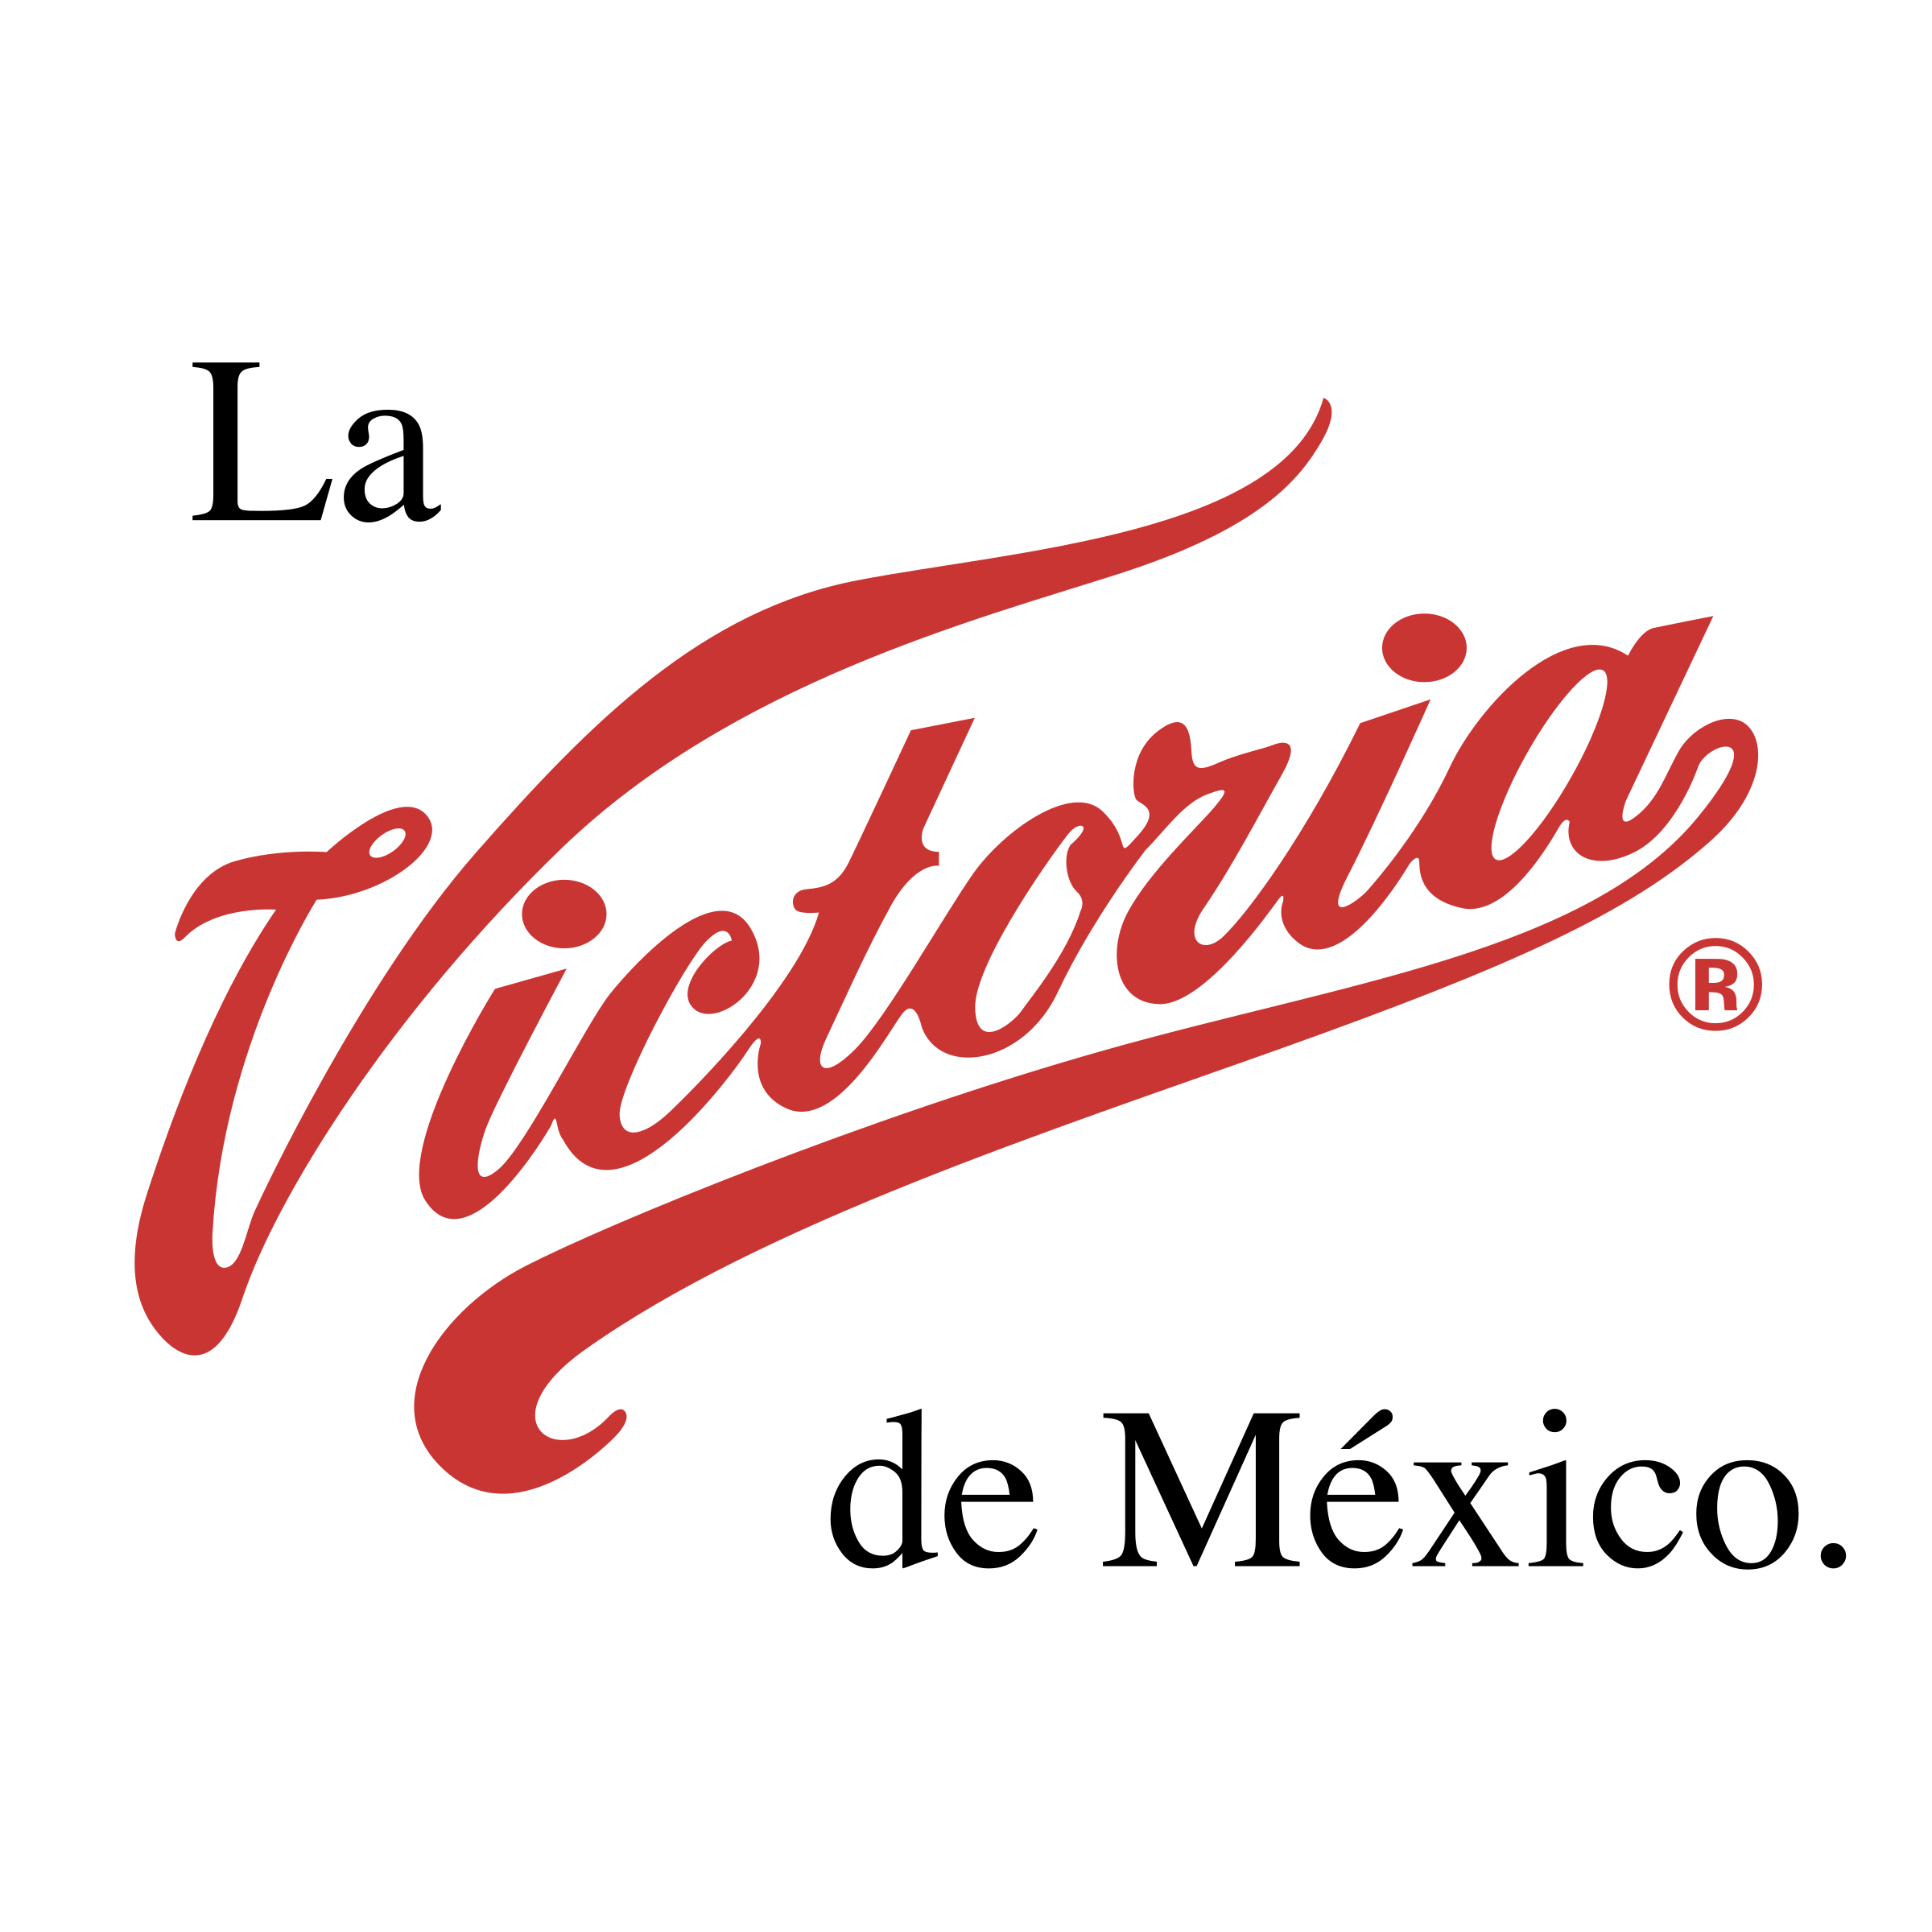 Mexico Logo - La Victoria de Mexico Logo PNG Transparent & SVG Vector - Freebie Supply